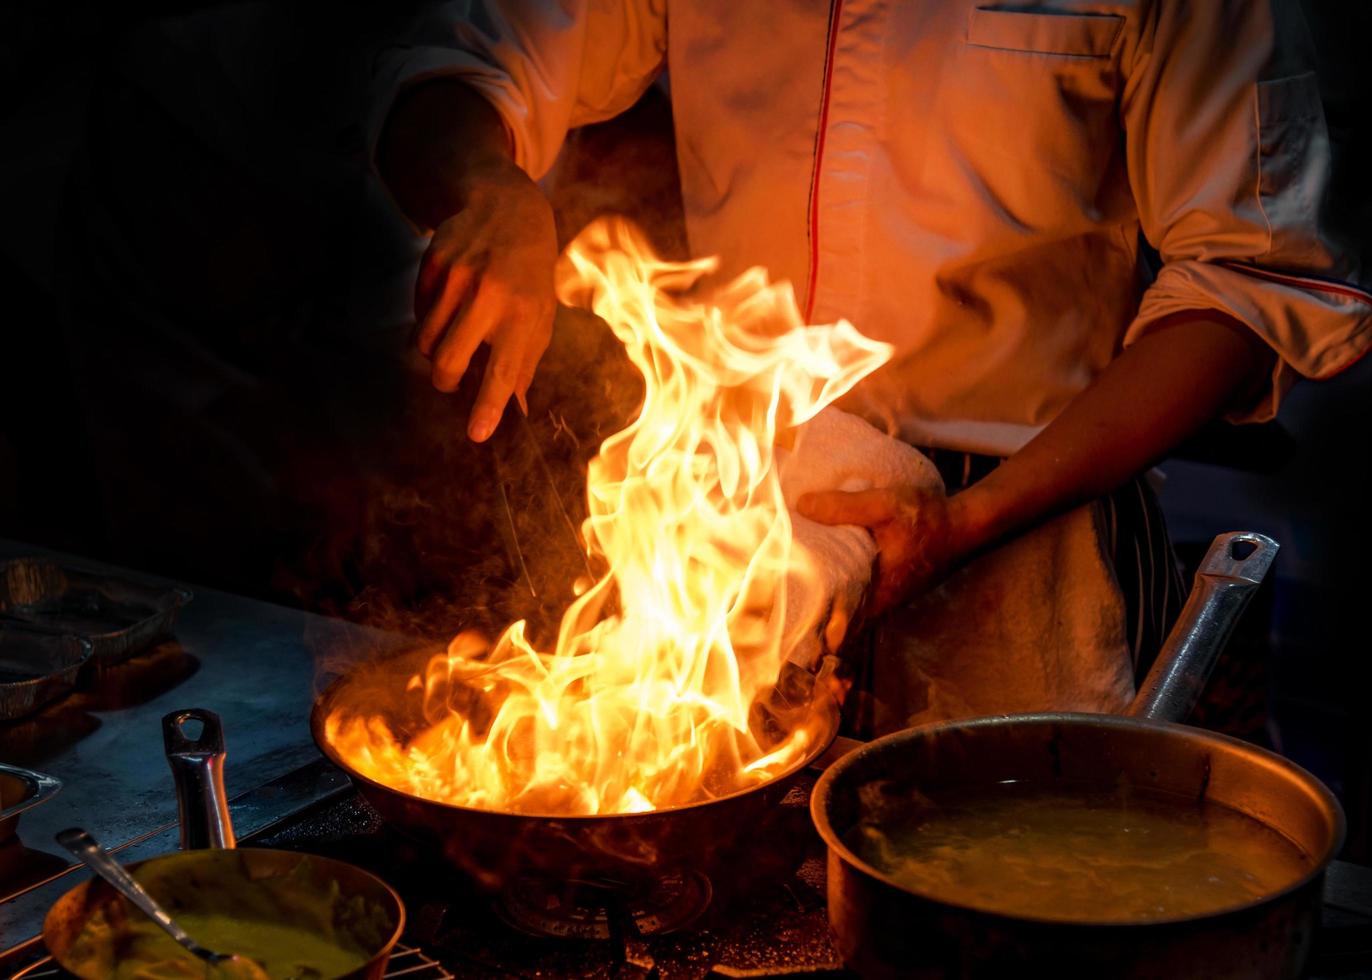 Chef cocinando con llama en una sartén sobre una estufa de cocina foto